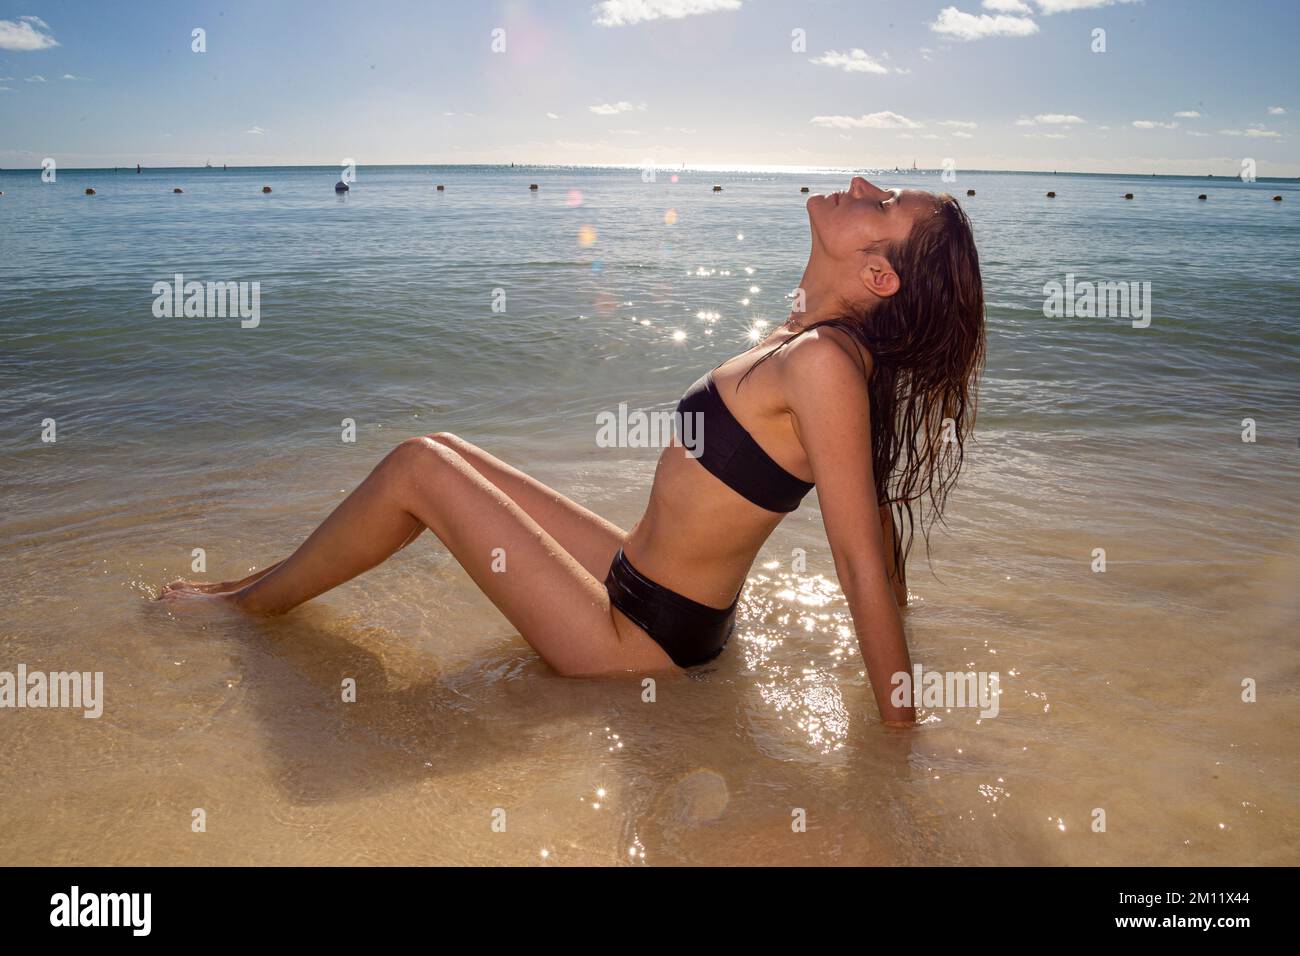 Junges weibliches Model in sexy Badebekleidung, posiert an einem der Strände der Insel Mauritius im Sonnenlicht. Pertfect wellige Haare, brauner, feiner Körper. Tropische Sommerstimmung. Stockfoto